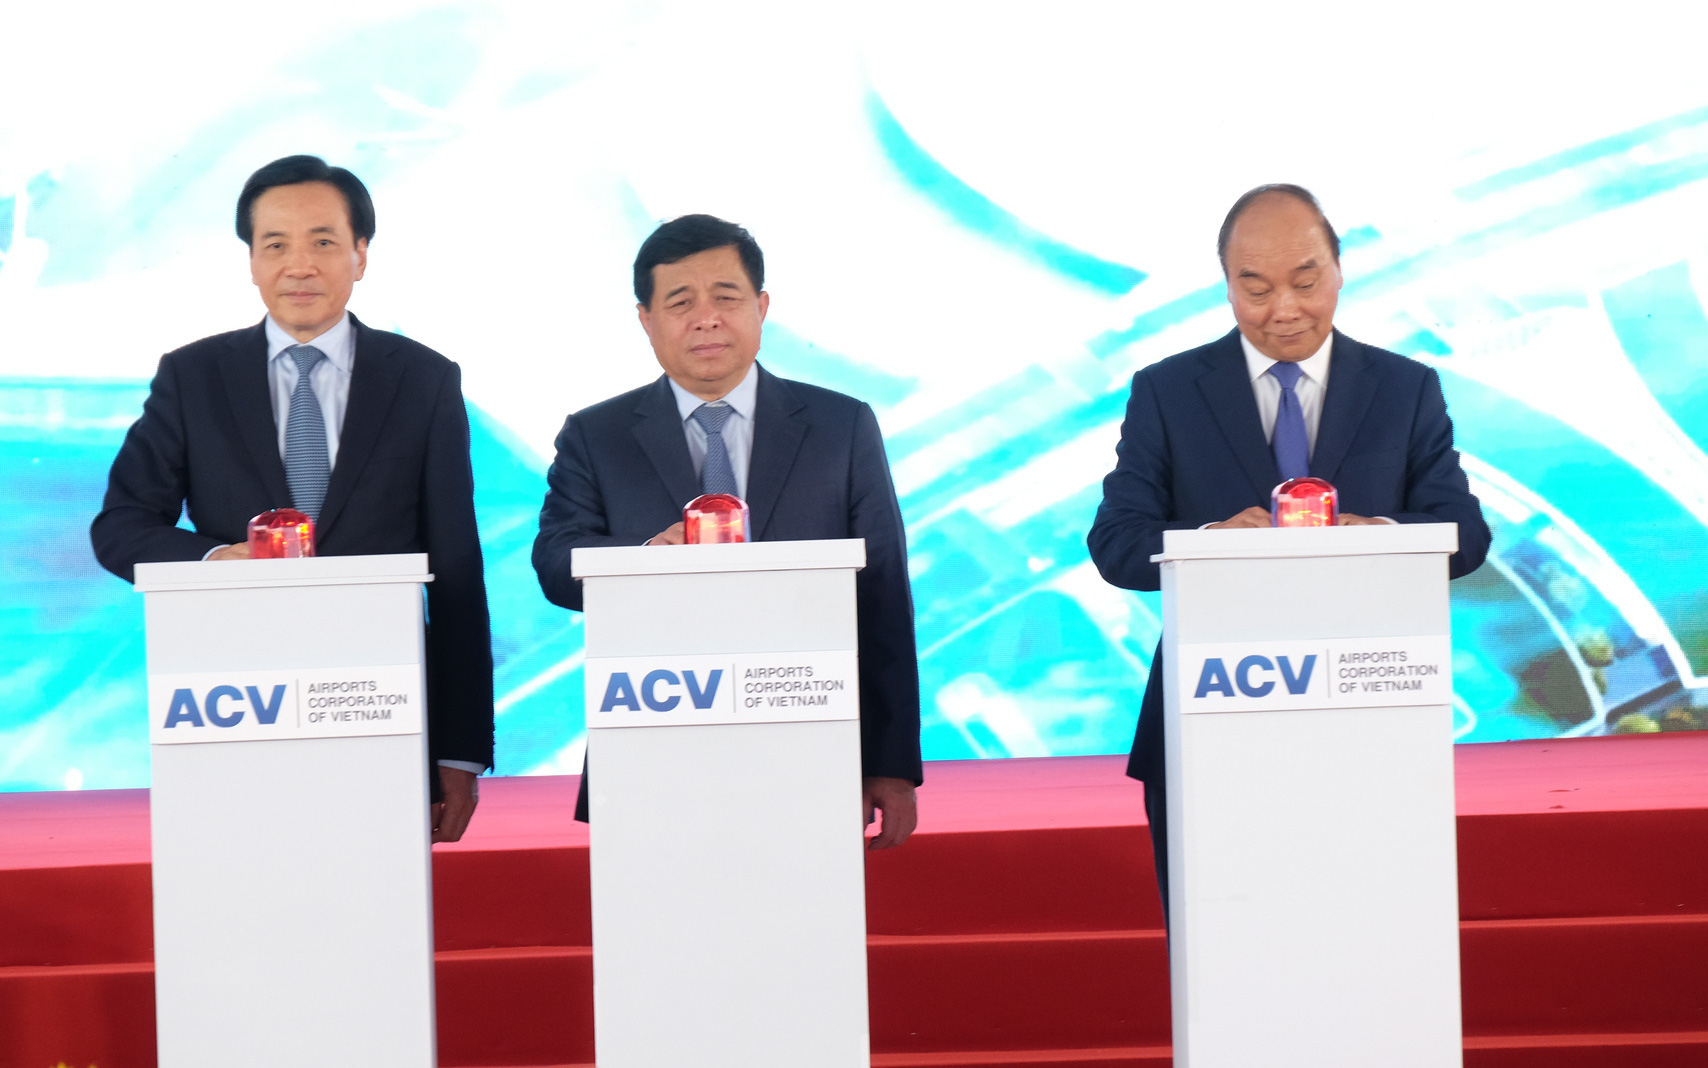 Chùm ảnh: Thủ tướng Nguyễn Xuân Phúc bấm nút khởi công xây dựng sân bay Long Thành